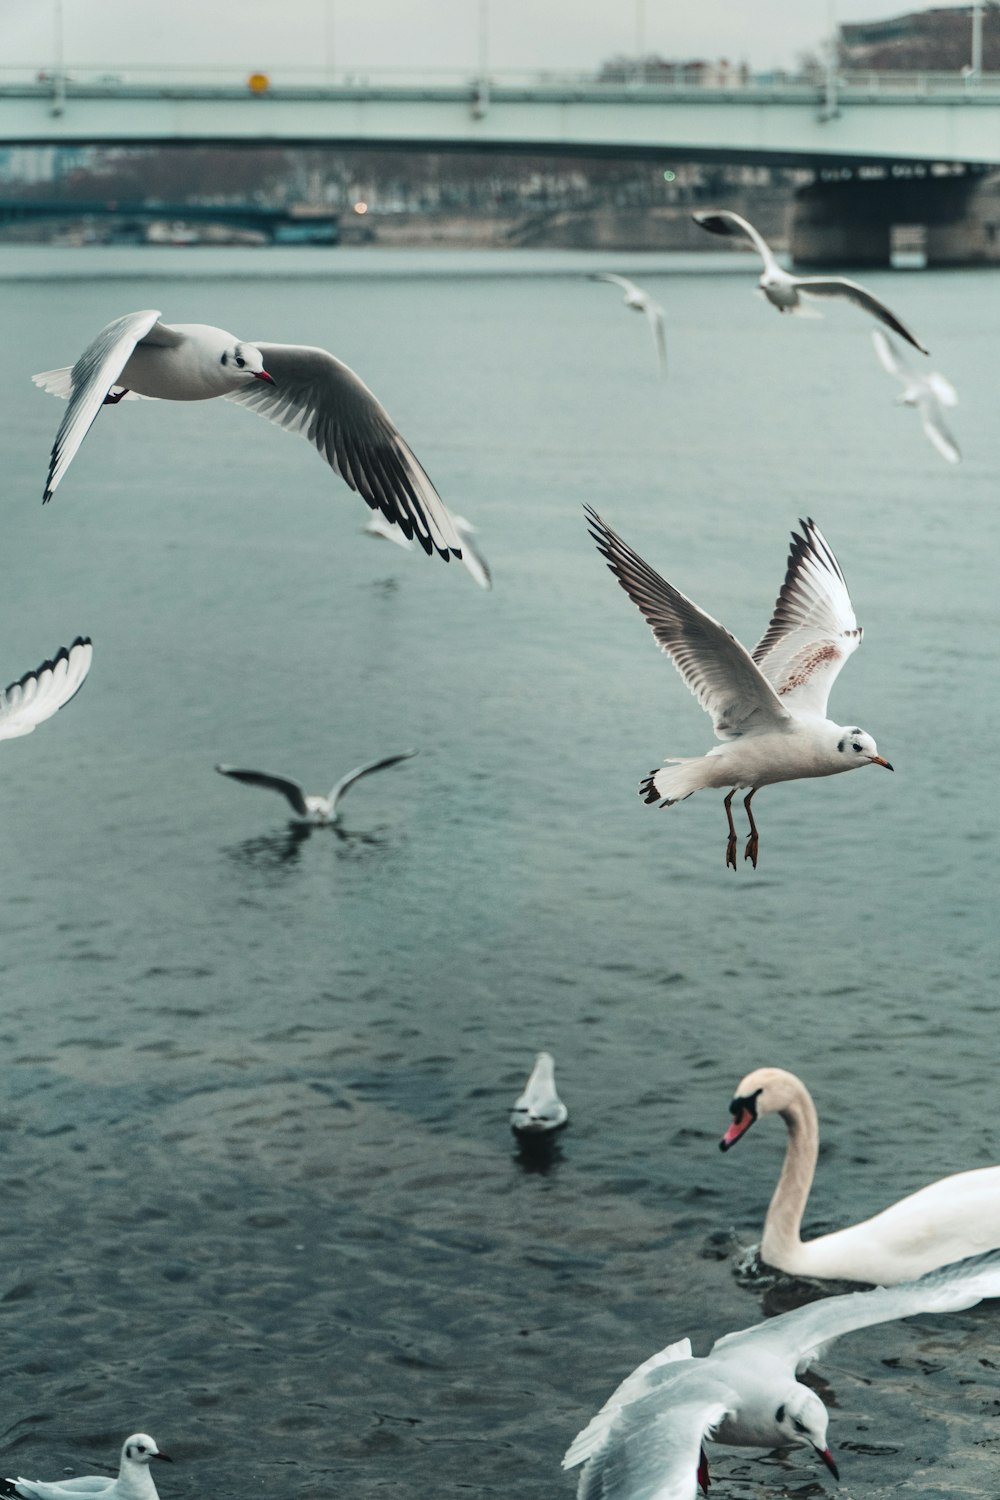 Oiseaux blancs et noirs volant au-dessus de la mer pendant la journée